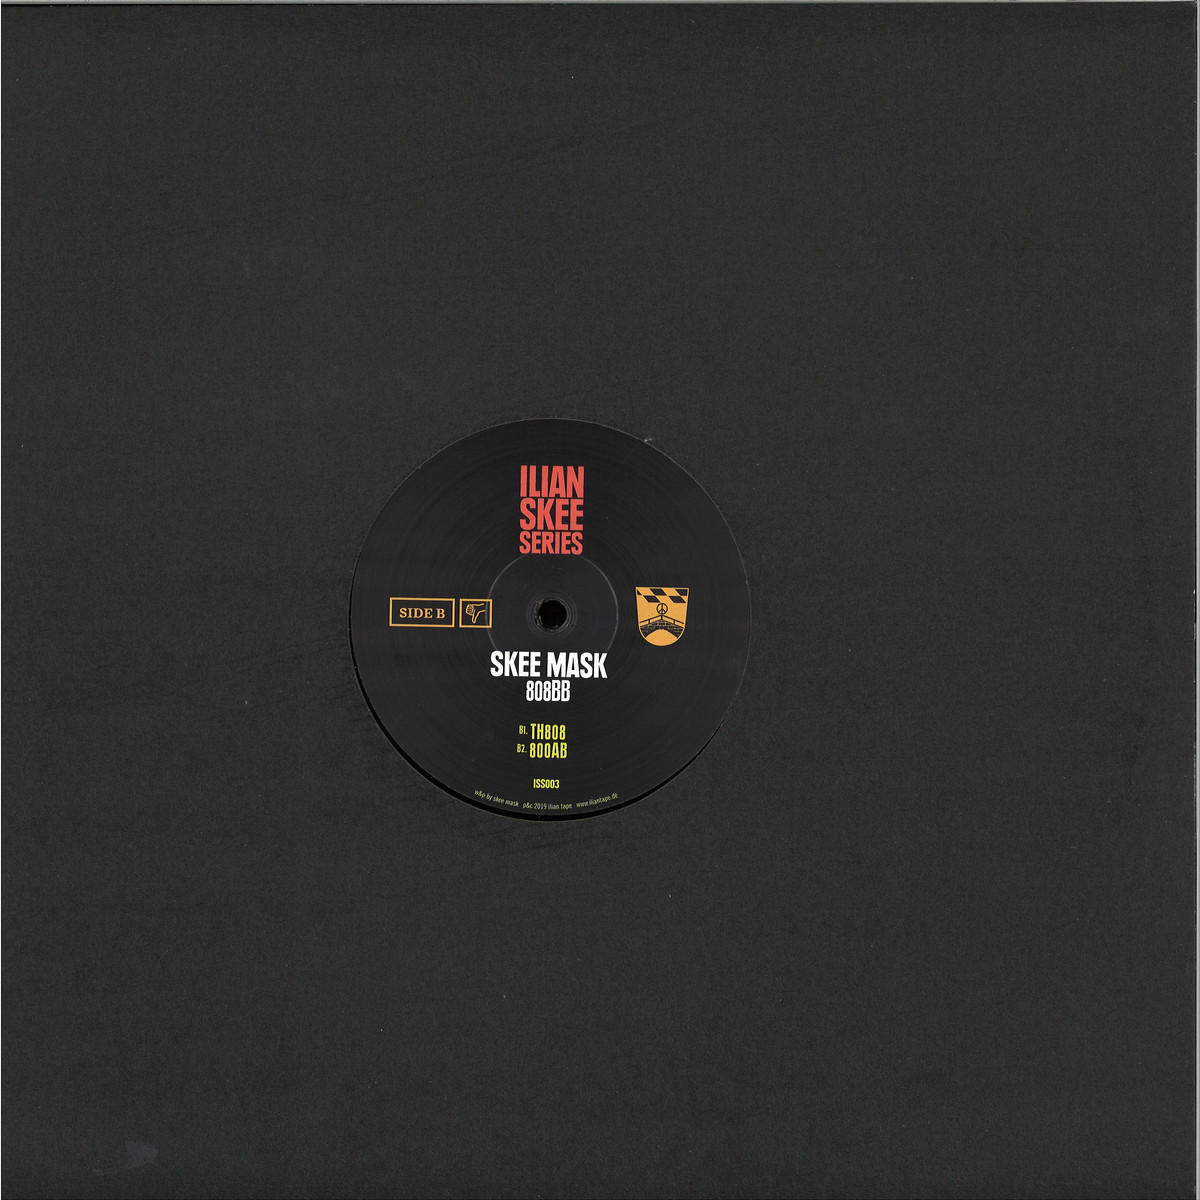 Skee Mask - 808bb / Ilian Skee Series ISS003 - Vinyl